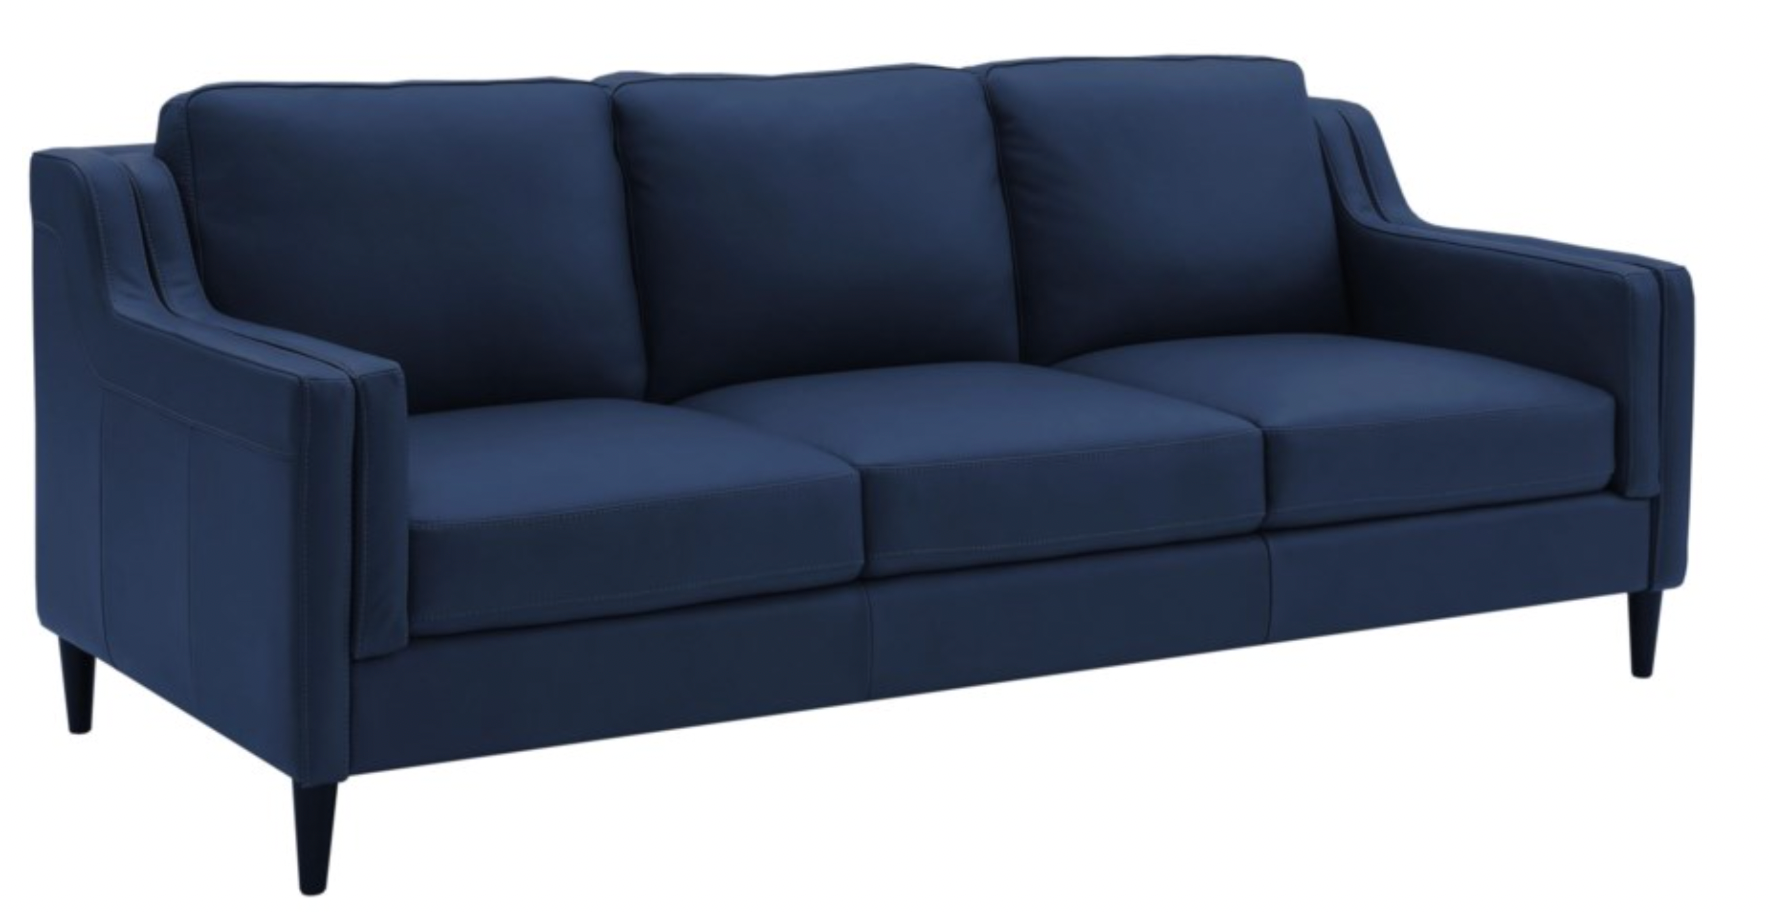 Chateaux -dax-sofa